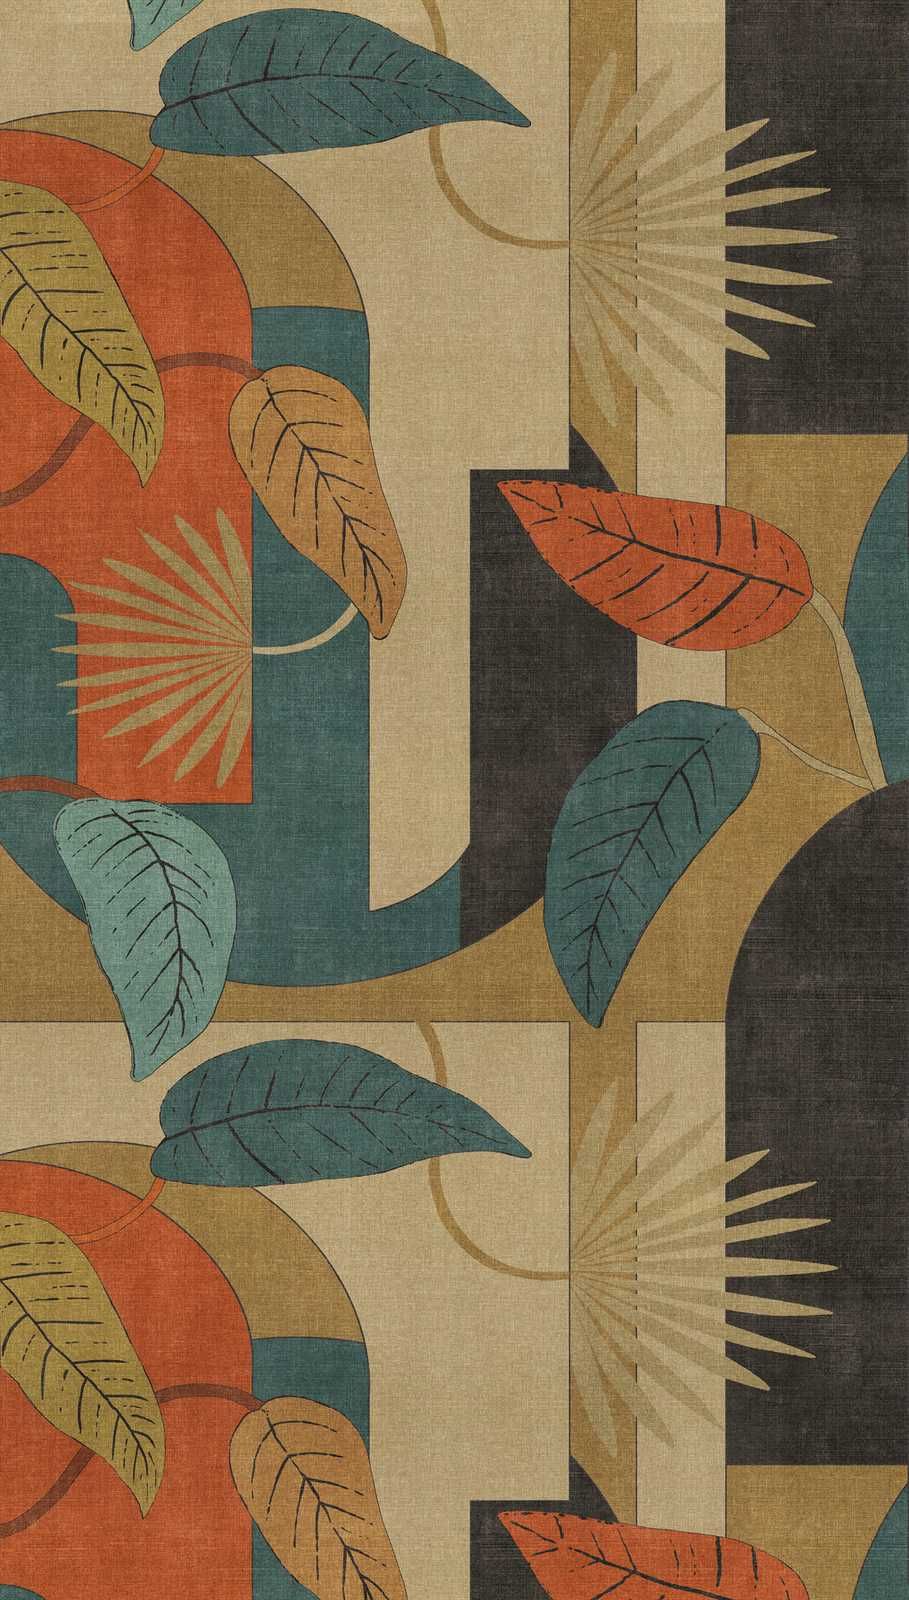             Papel pintado tejido-no tejido abstracto con hojas y motivos gráficos - beige, azul, rojo
        